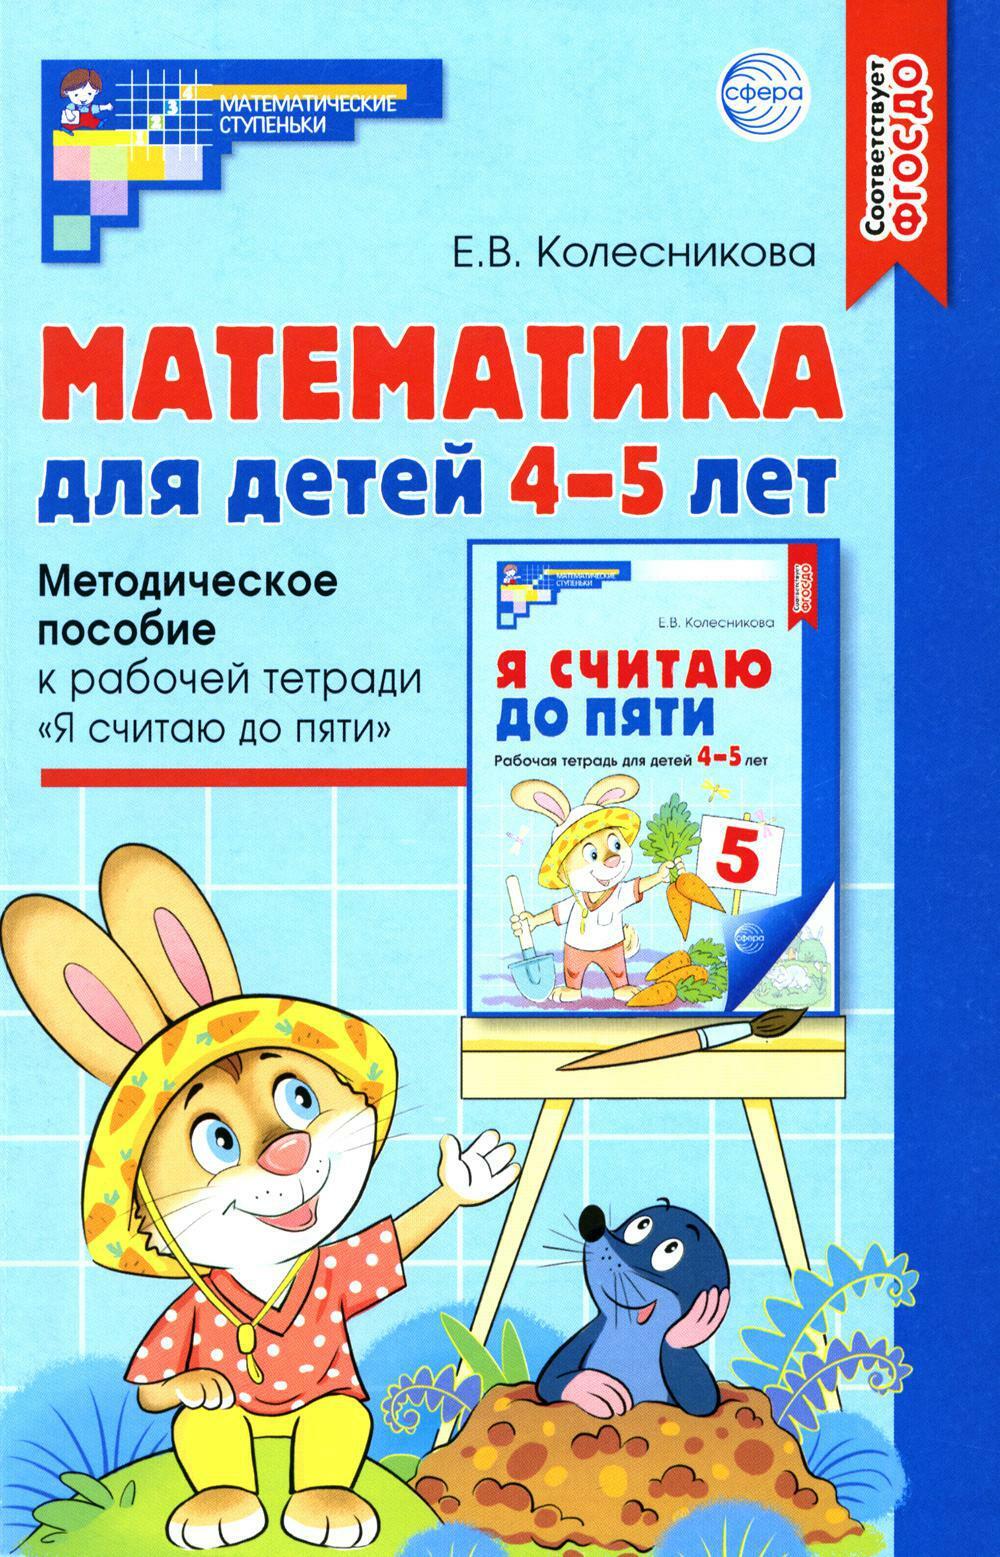 Математика для детей 4-5 лет: Методическое пособие к рабочей тетради "Я считаю до пяти". 5-е изд., перераб. и доп